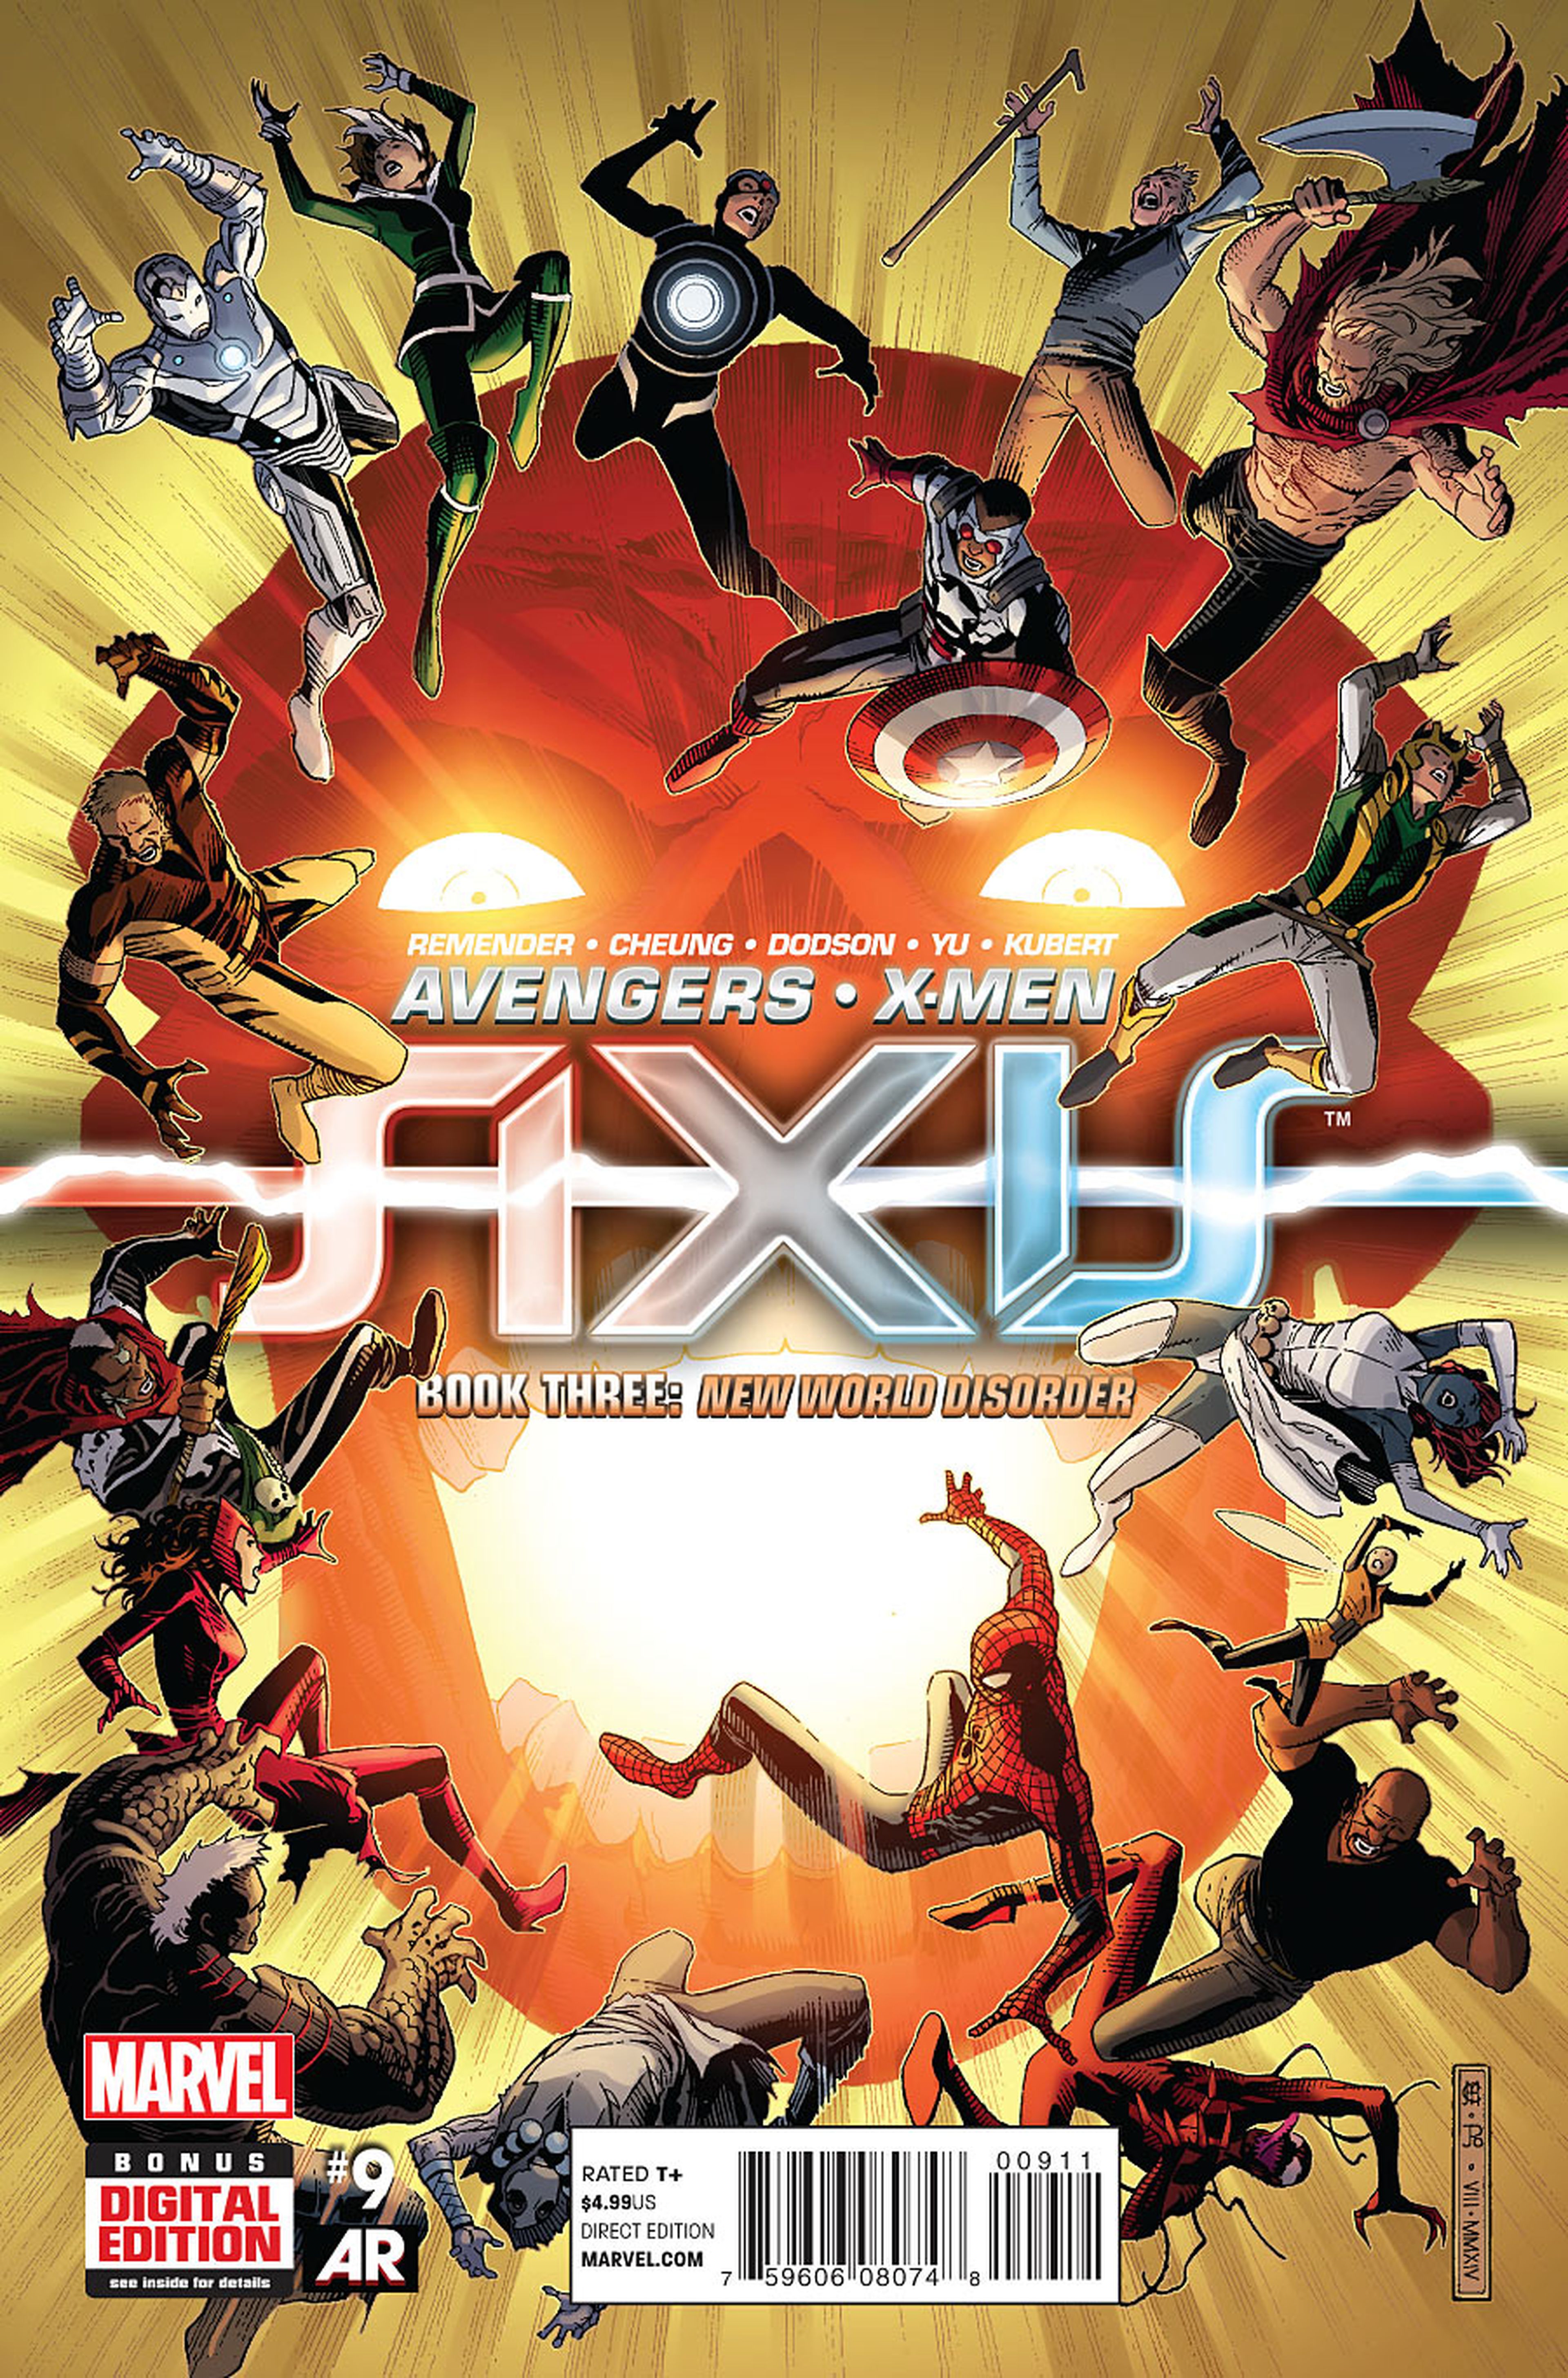 Avance del final de Axis, el gran crossover de Marvel en 2014